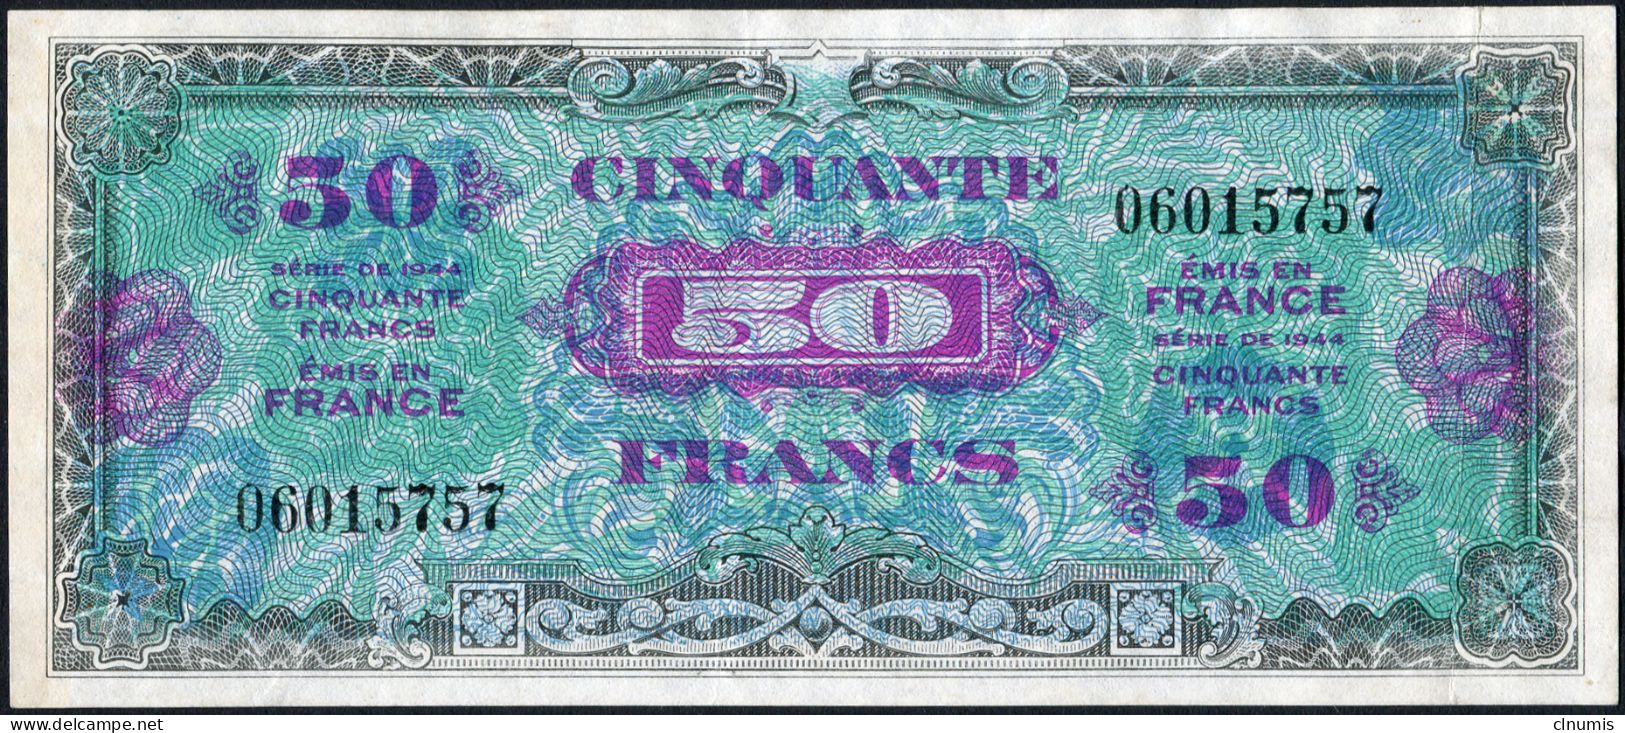 RARE 50 Francs Drapeau 1944, Sans Série, N° 060115757 - 1944 Drapeau/Francia